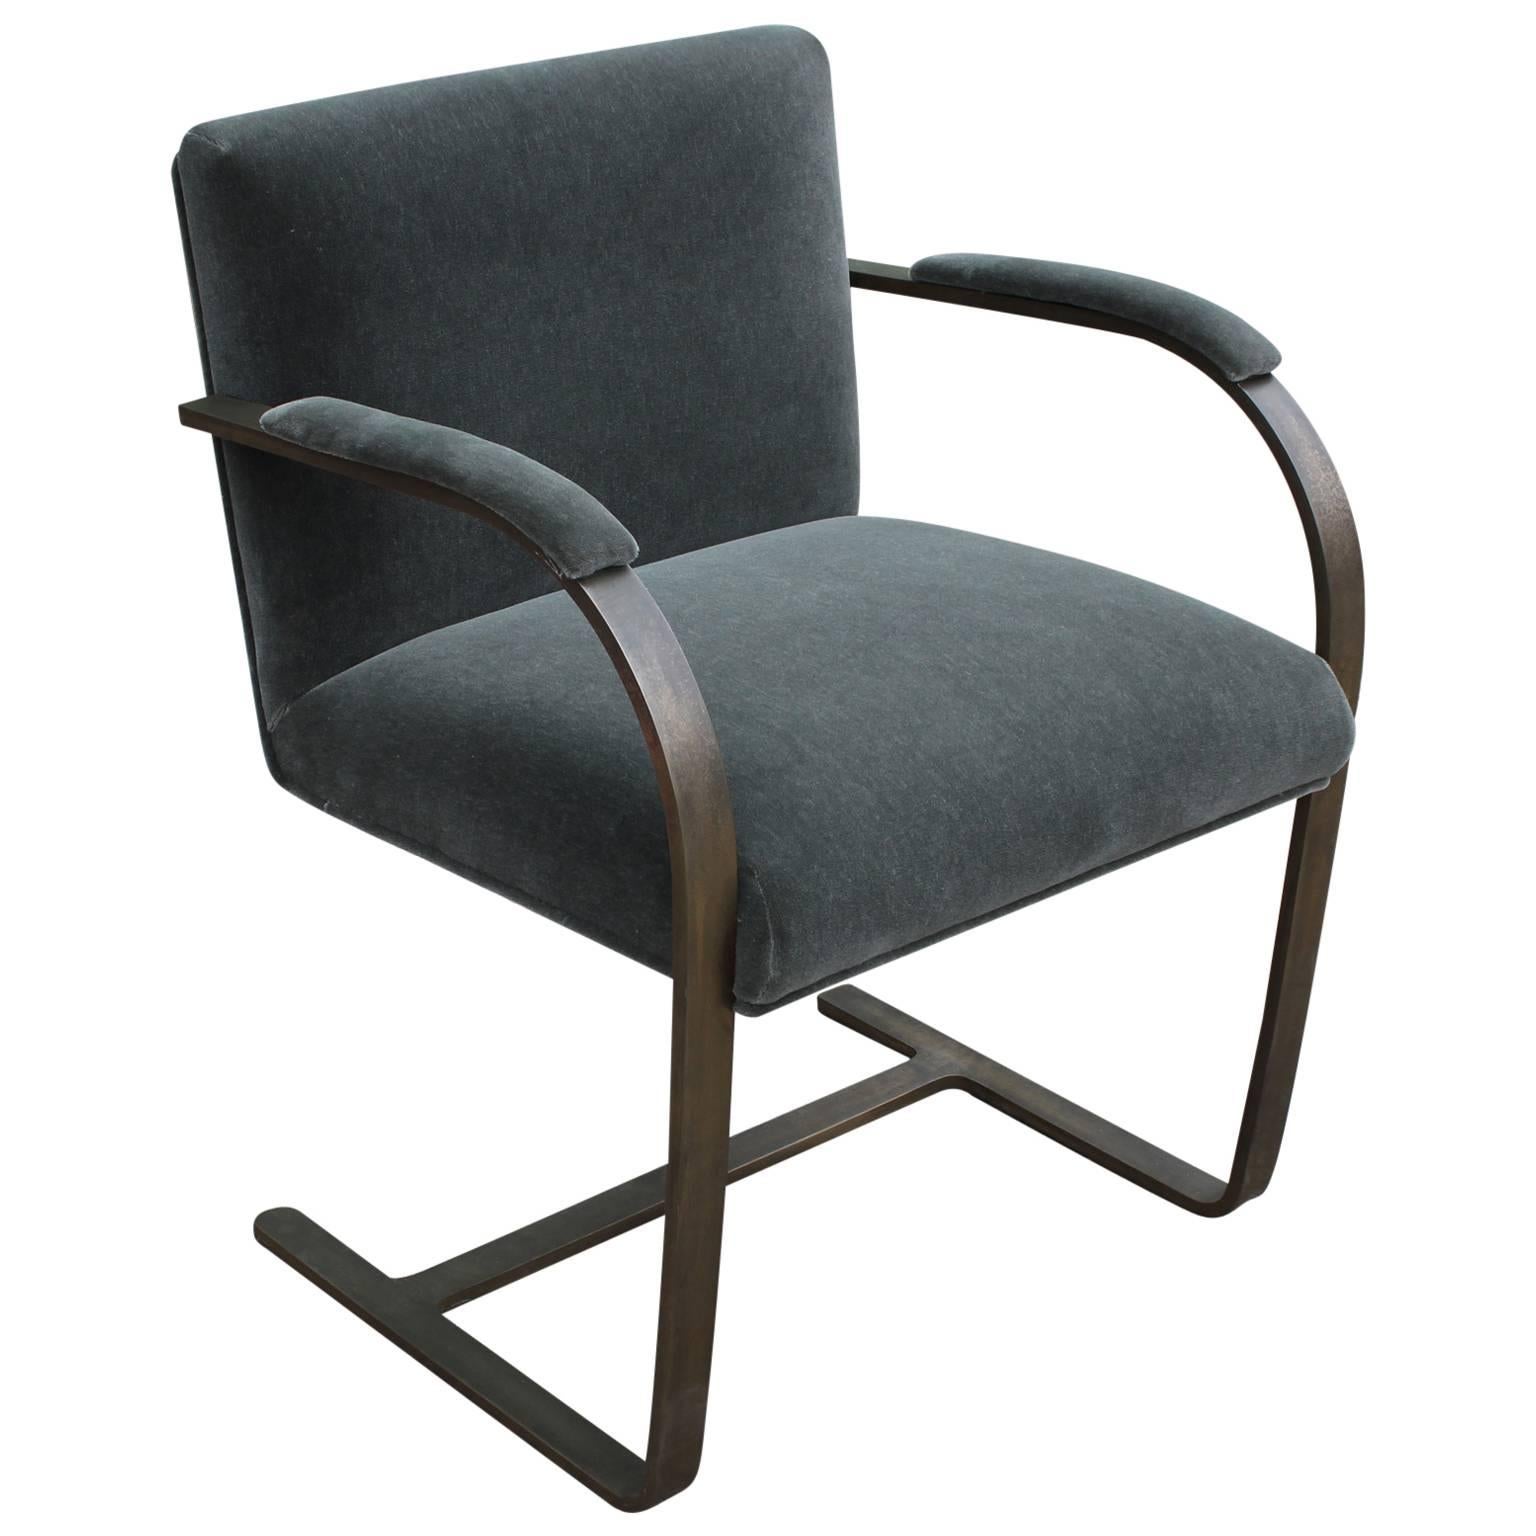 Rare Bronze Flat-Bar Brno Chair by Mies van der Rohe